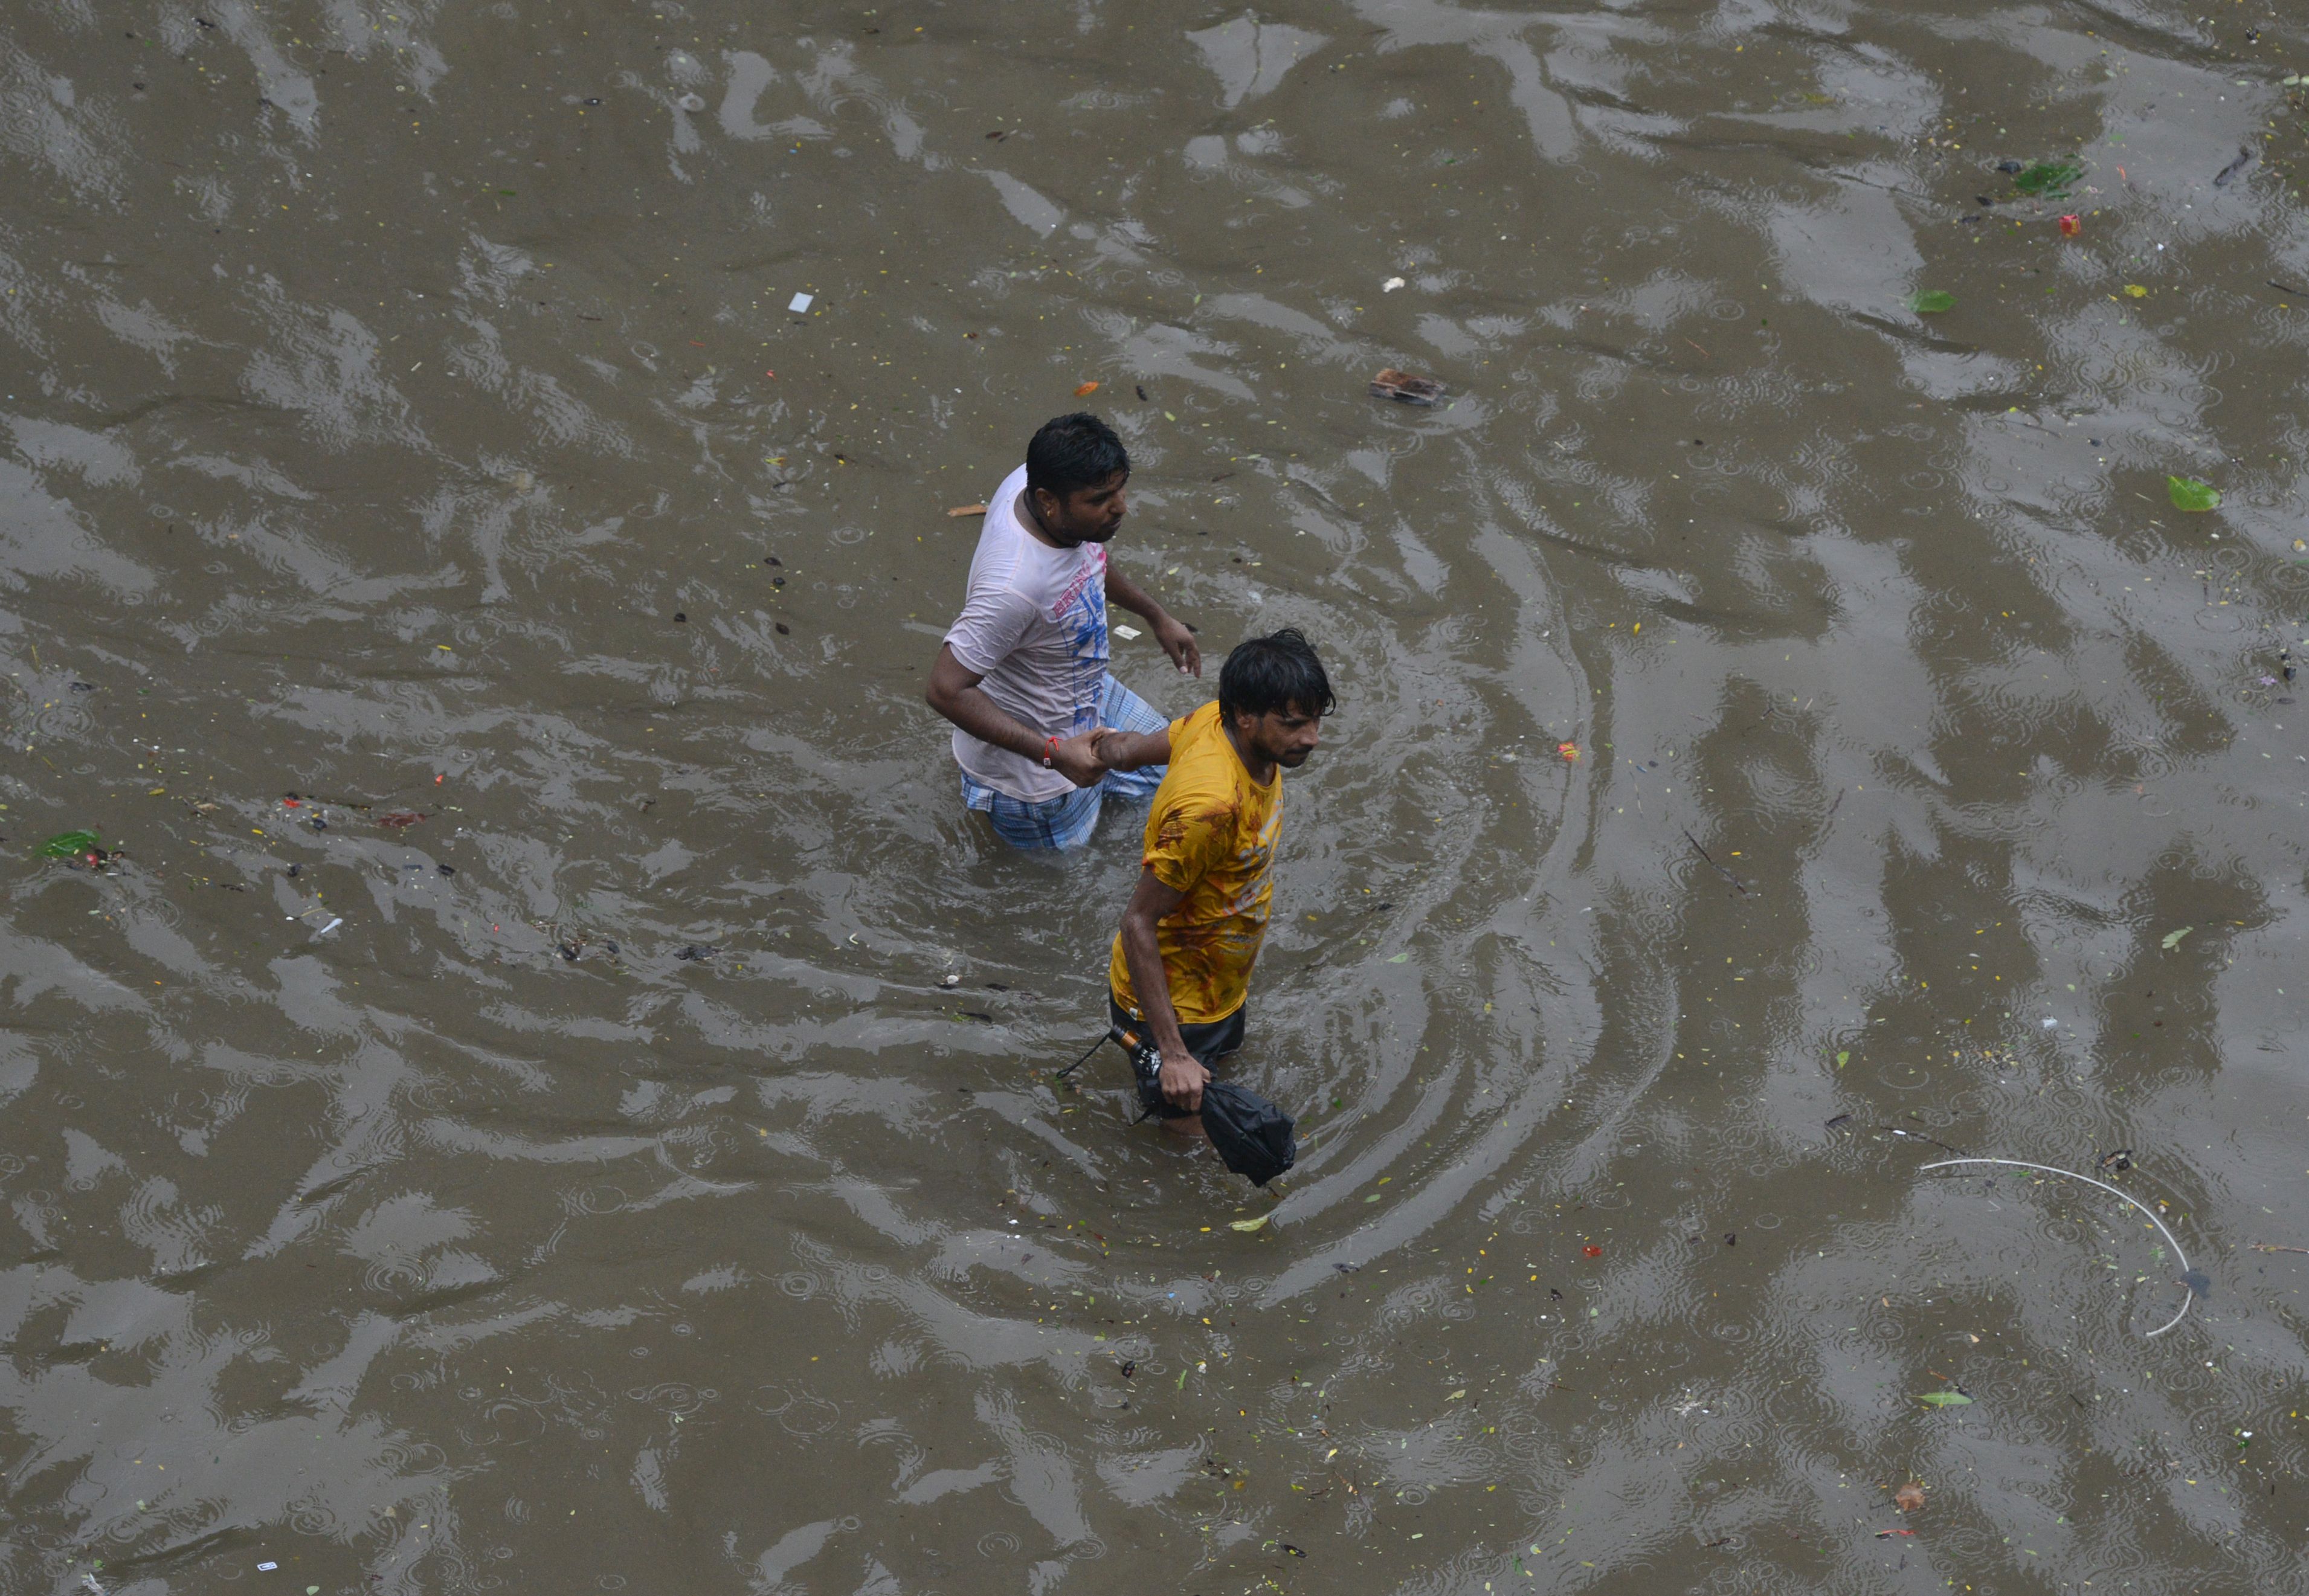  غرق مواطنين فى الأمطار الهندية 